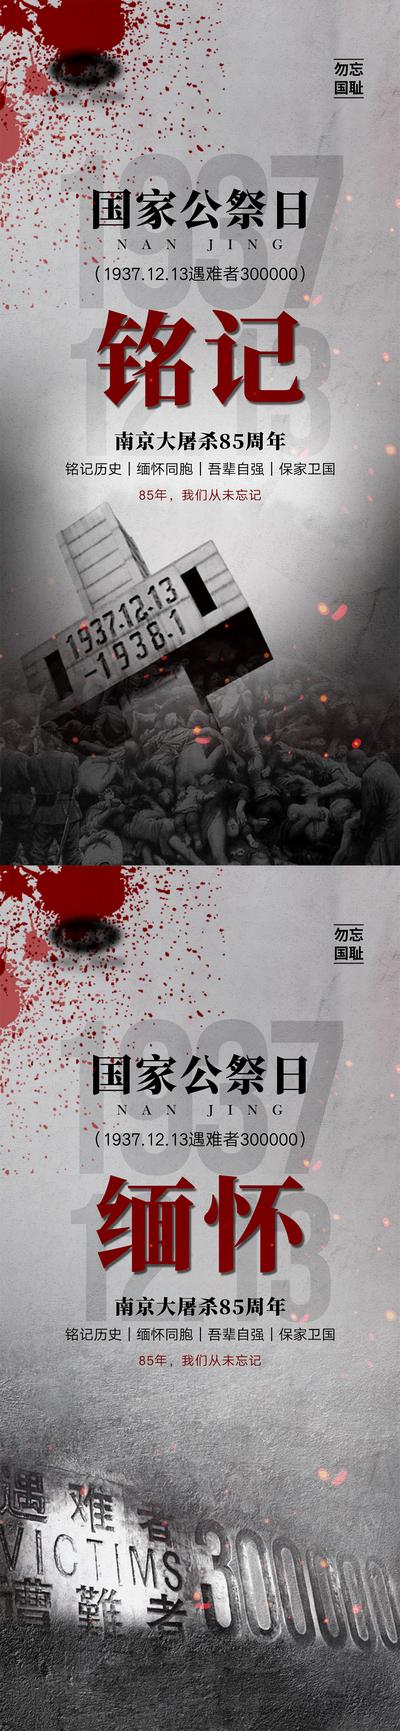 【南门网】海报 公历节日 国家公祭日 南京大屠杀 纪念日 缅怀 纪念